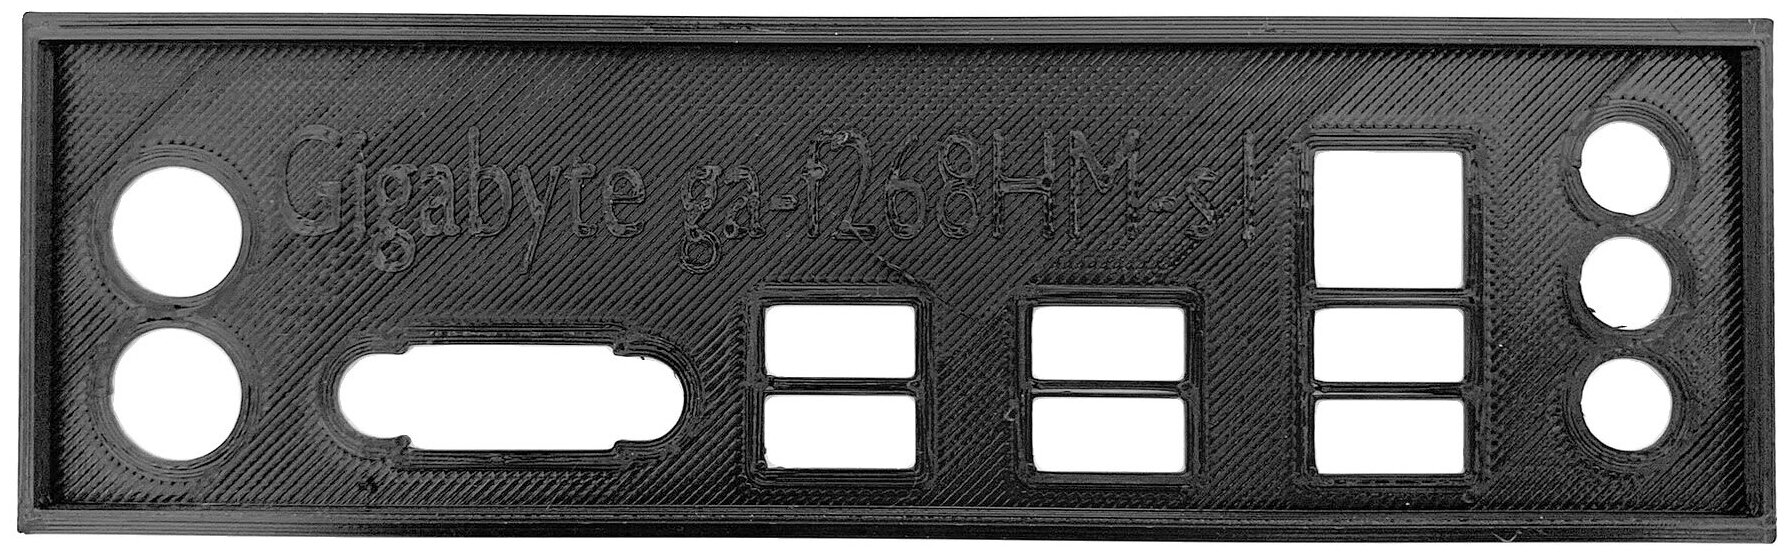 Пылезащитная заглушка задняя панель для материнской платы Gigabyte GA-F2A68HM-S1 черный